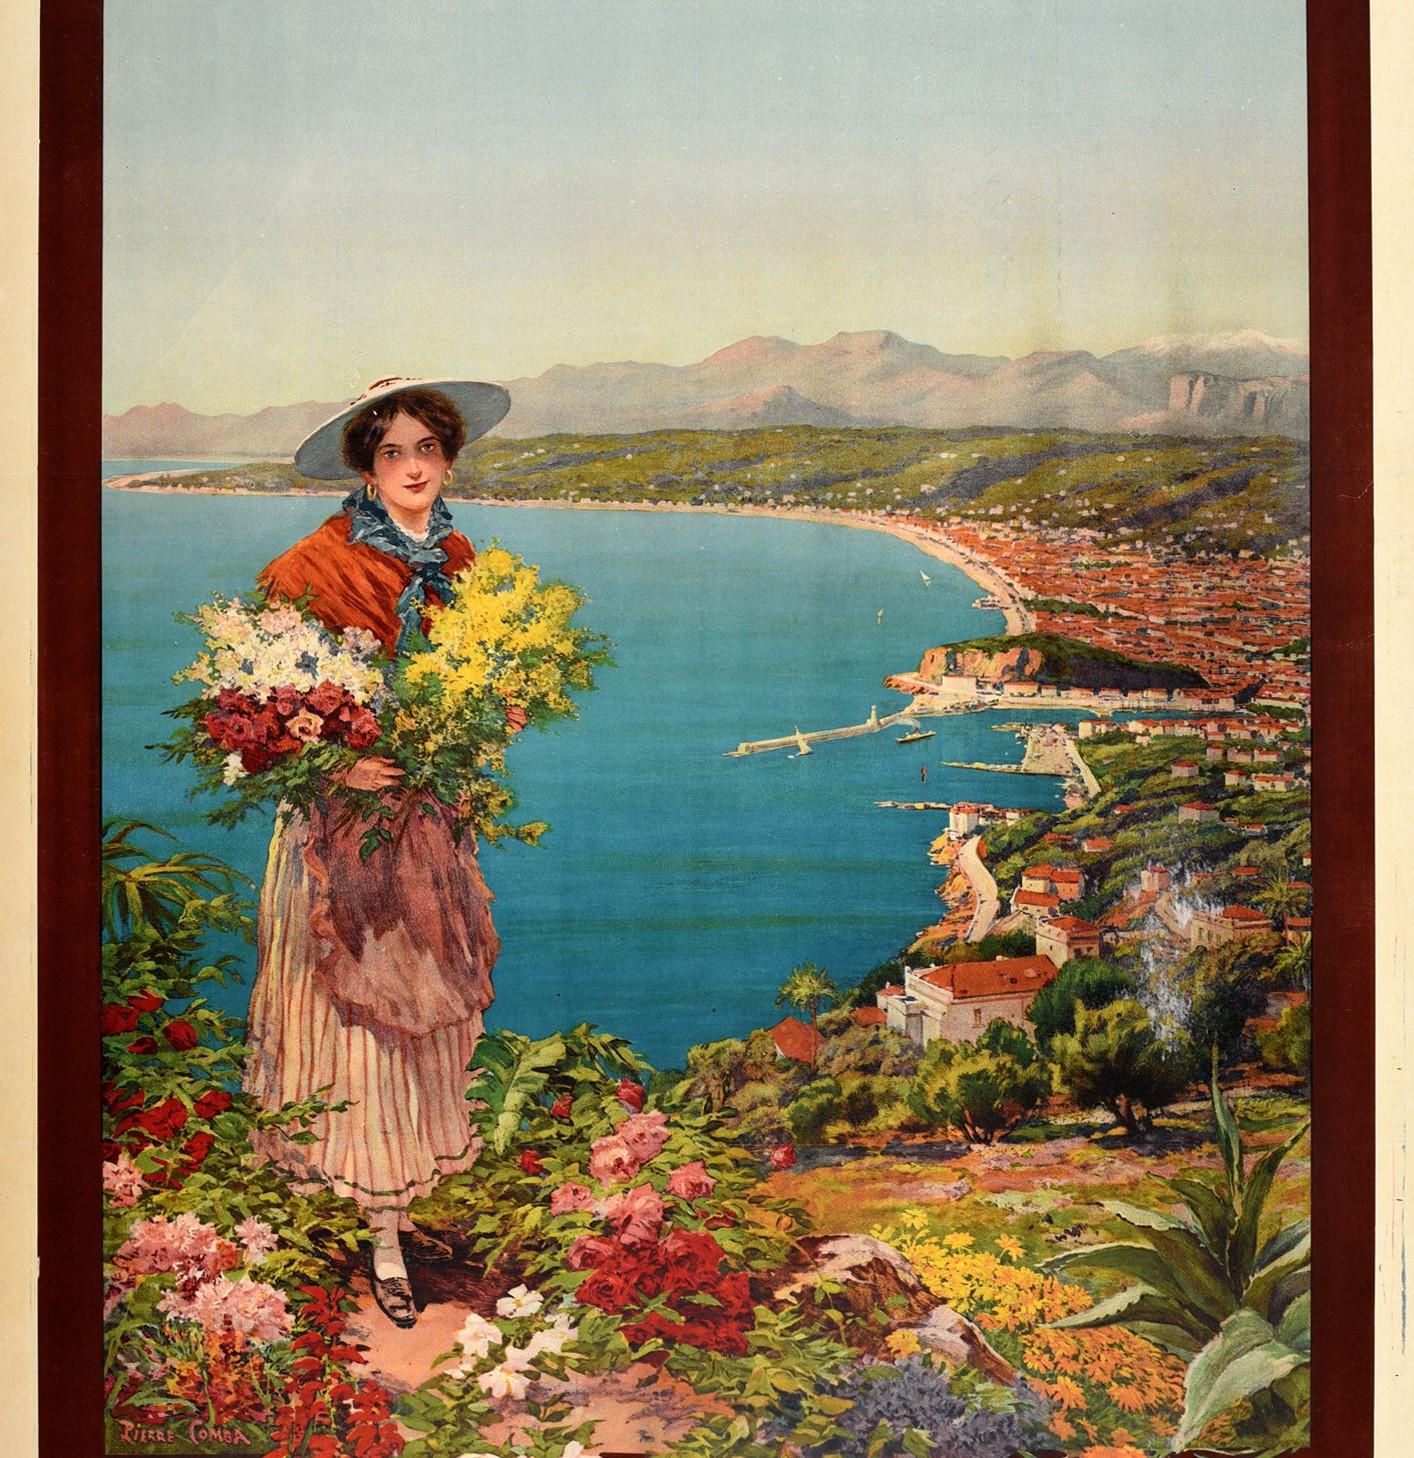 Originales antikes Reise-Werbeplakat für Nizza Reine de la Cote D'Azur Fetes Sports Tourisme / Königin der Côte d'Azur Feiertage Sporttourismus mit szenischem Kunstwerk von Pierre Comba (1859-1934), das eine junge Dame zeigt, die dem Betrachter